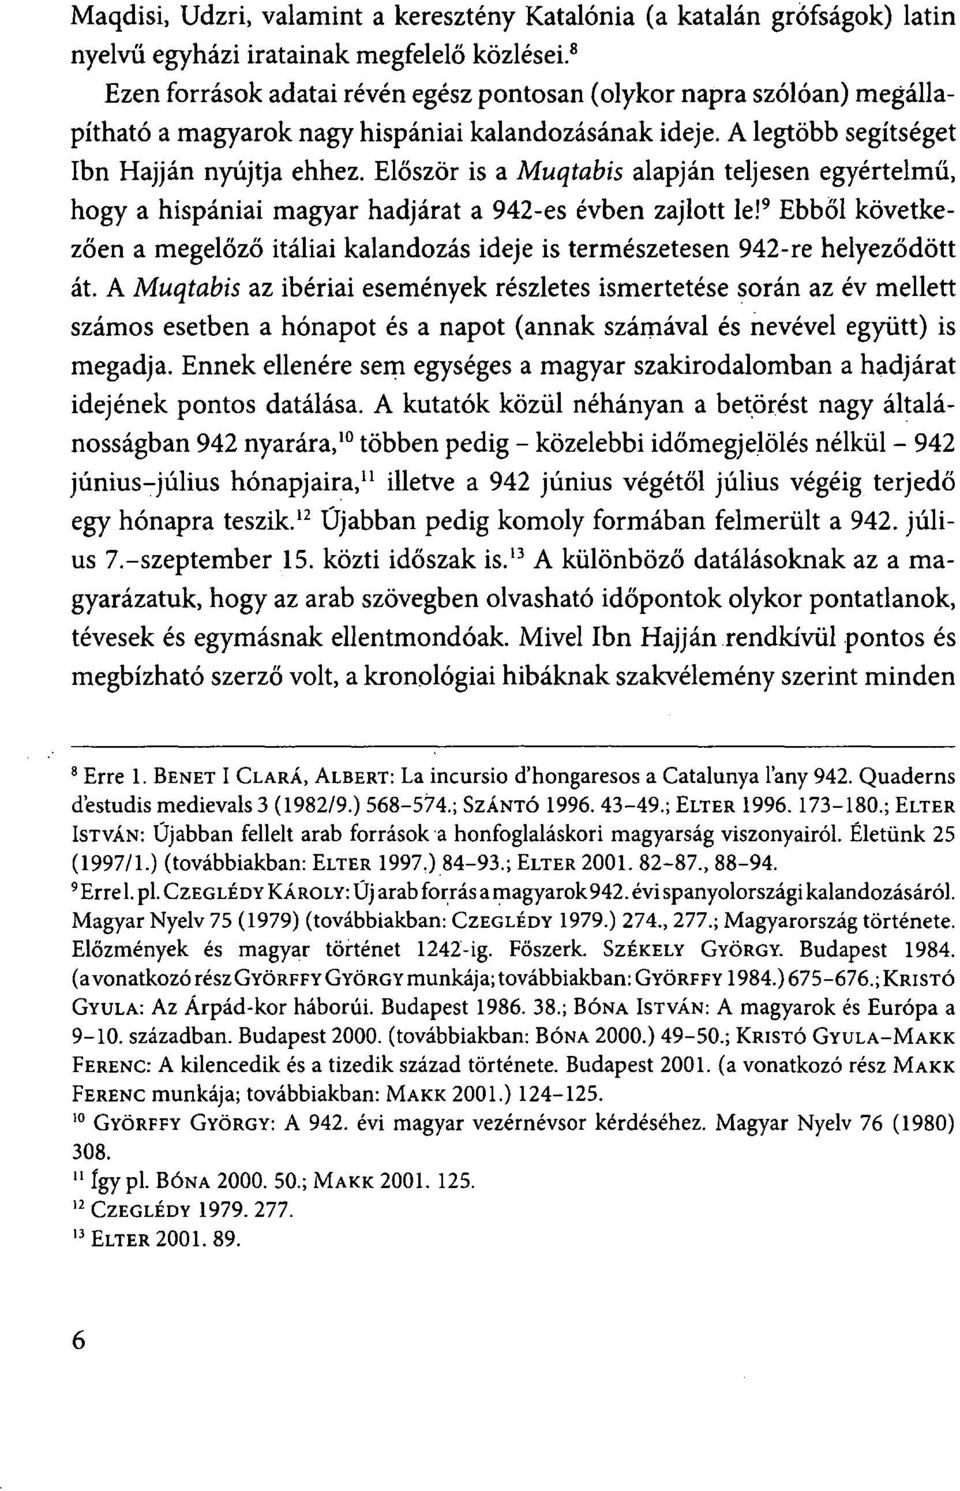 Először is a Muqtabis alapján teljesen egyértelmű, hogy a hispániai magyar hadjárat a 942-es évben zajlott le!